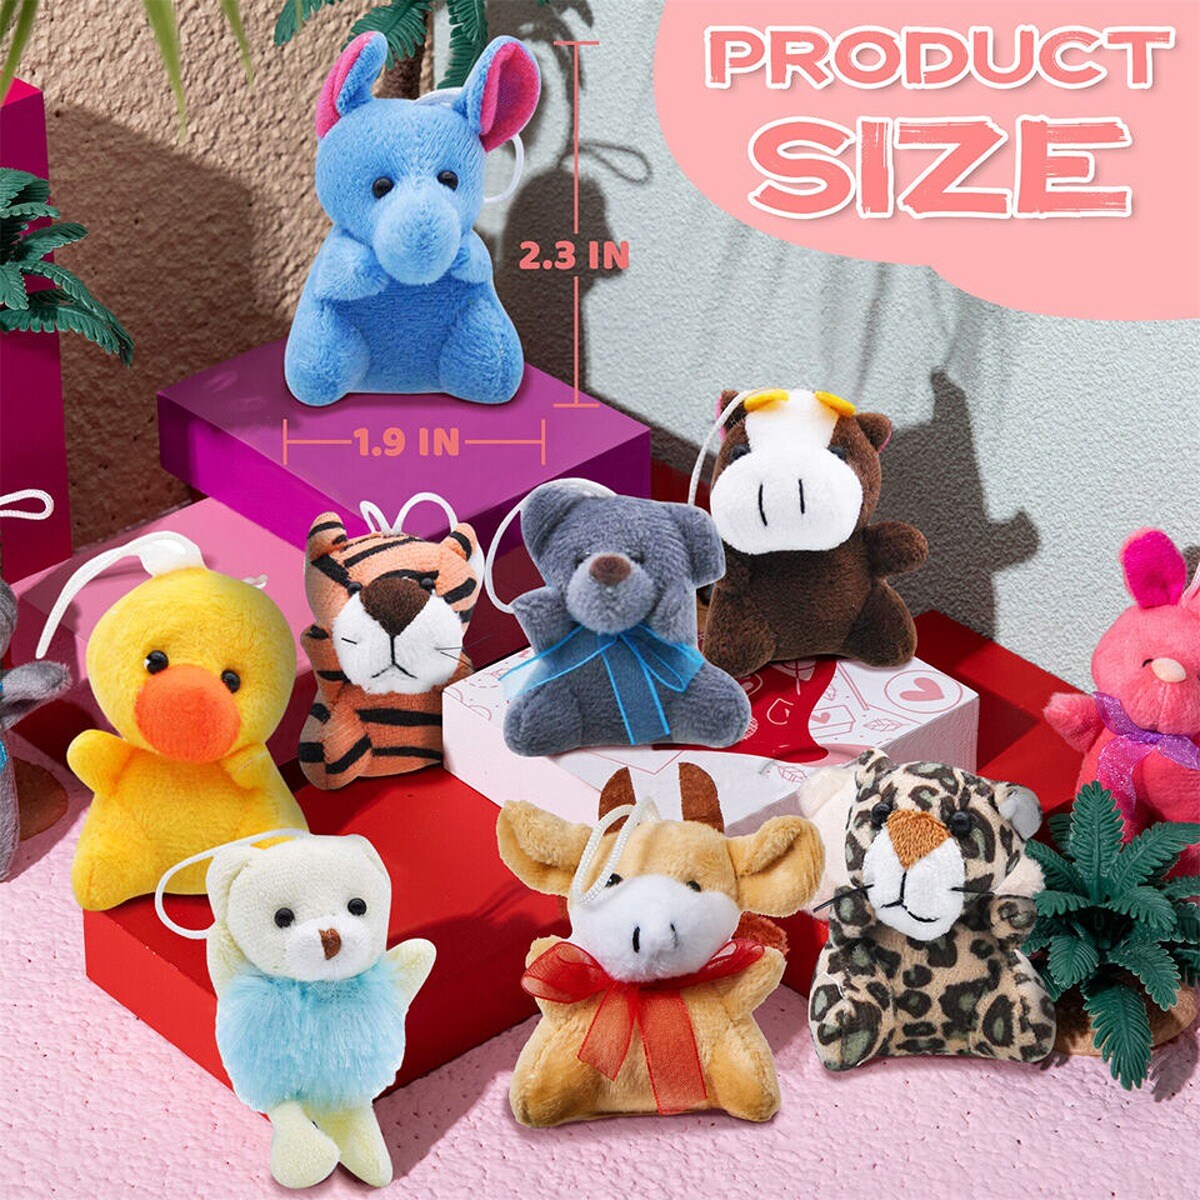 Stuffed Animal Plush Toy 24 pcs